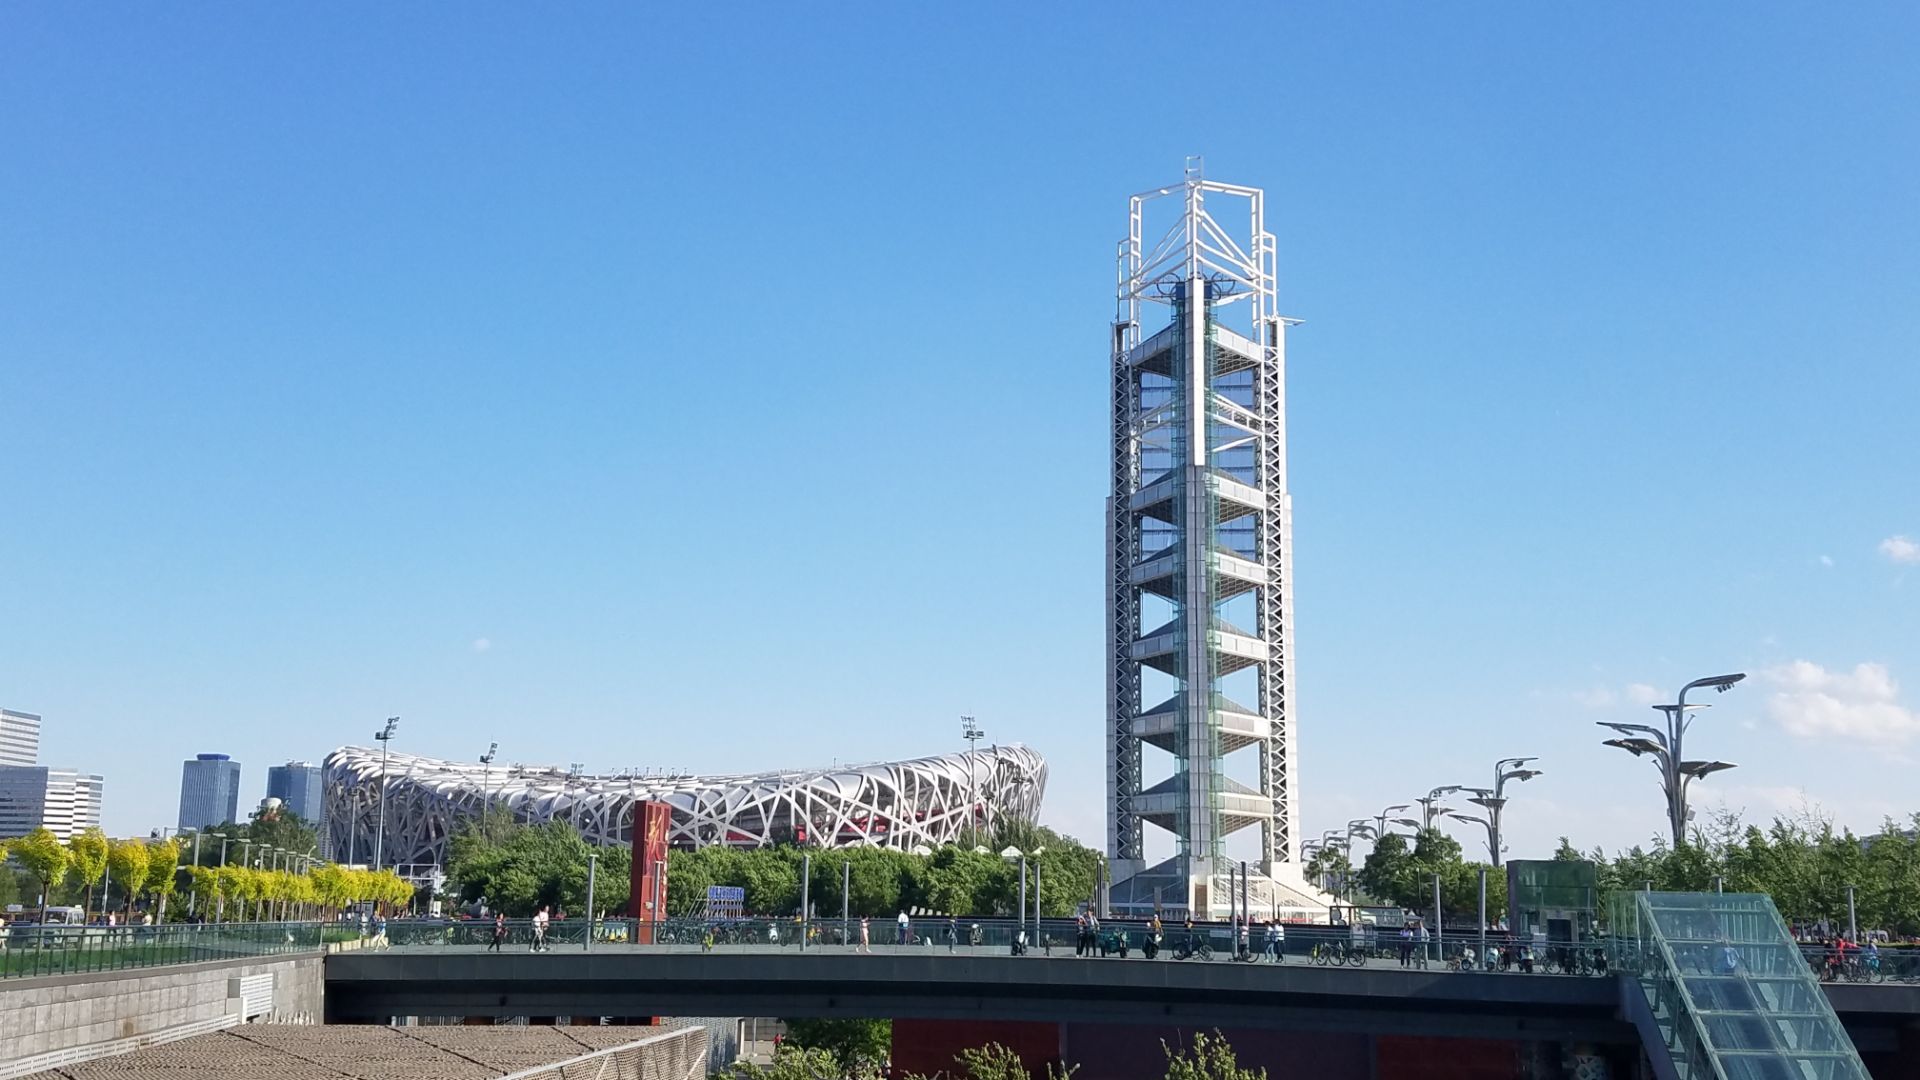 作为奥林匹克公园中的最高建筑,132米的玲珑塔也是整个奥运工程的